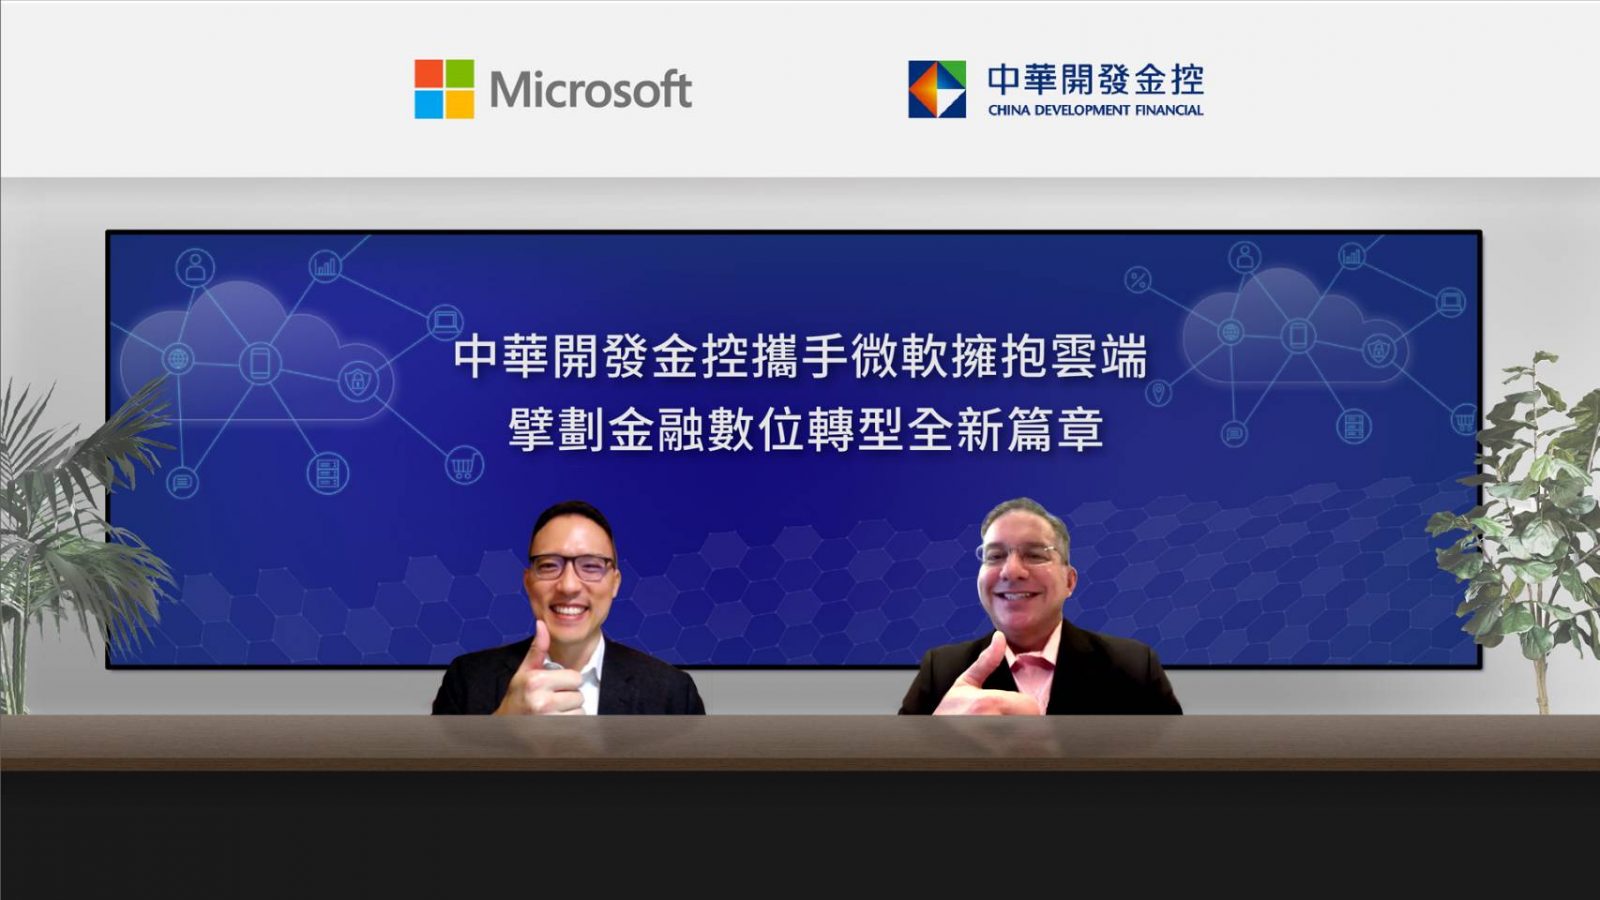 台灣微軟與中華開發金控今日共同宣布，開發金控領先金融同業導入微軟雲端解決方案，以雲端創新技術，為台灣金融產業創下全新里程碑。